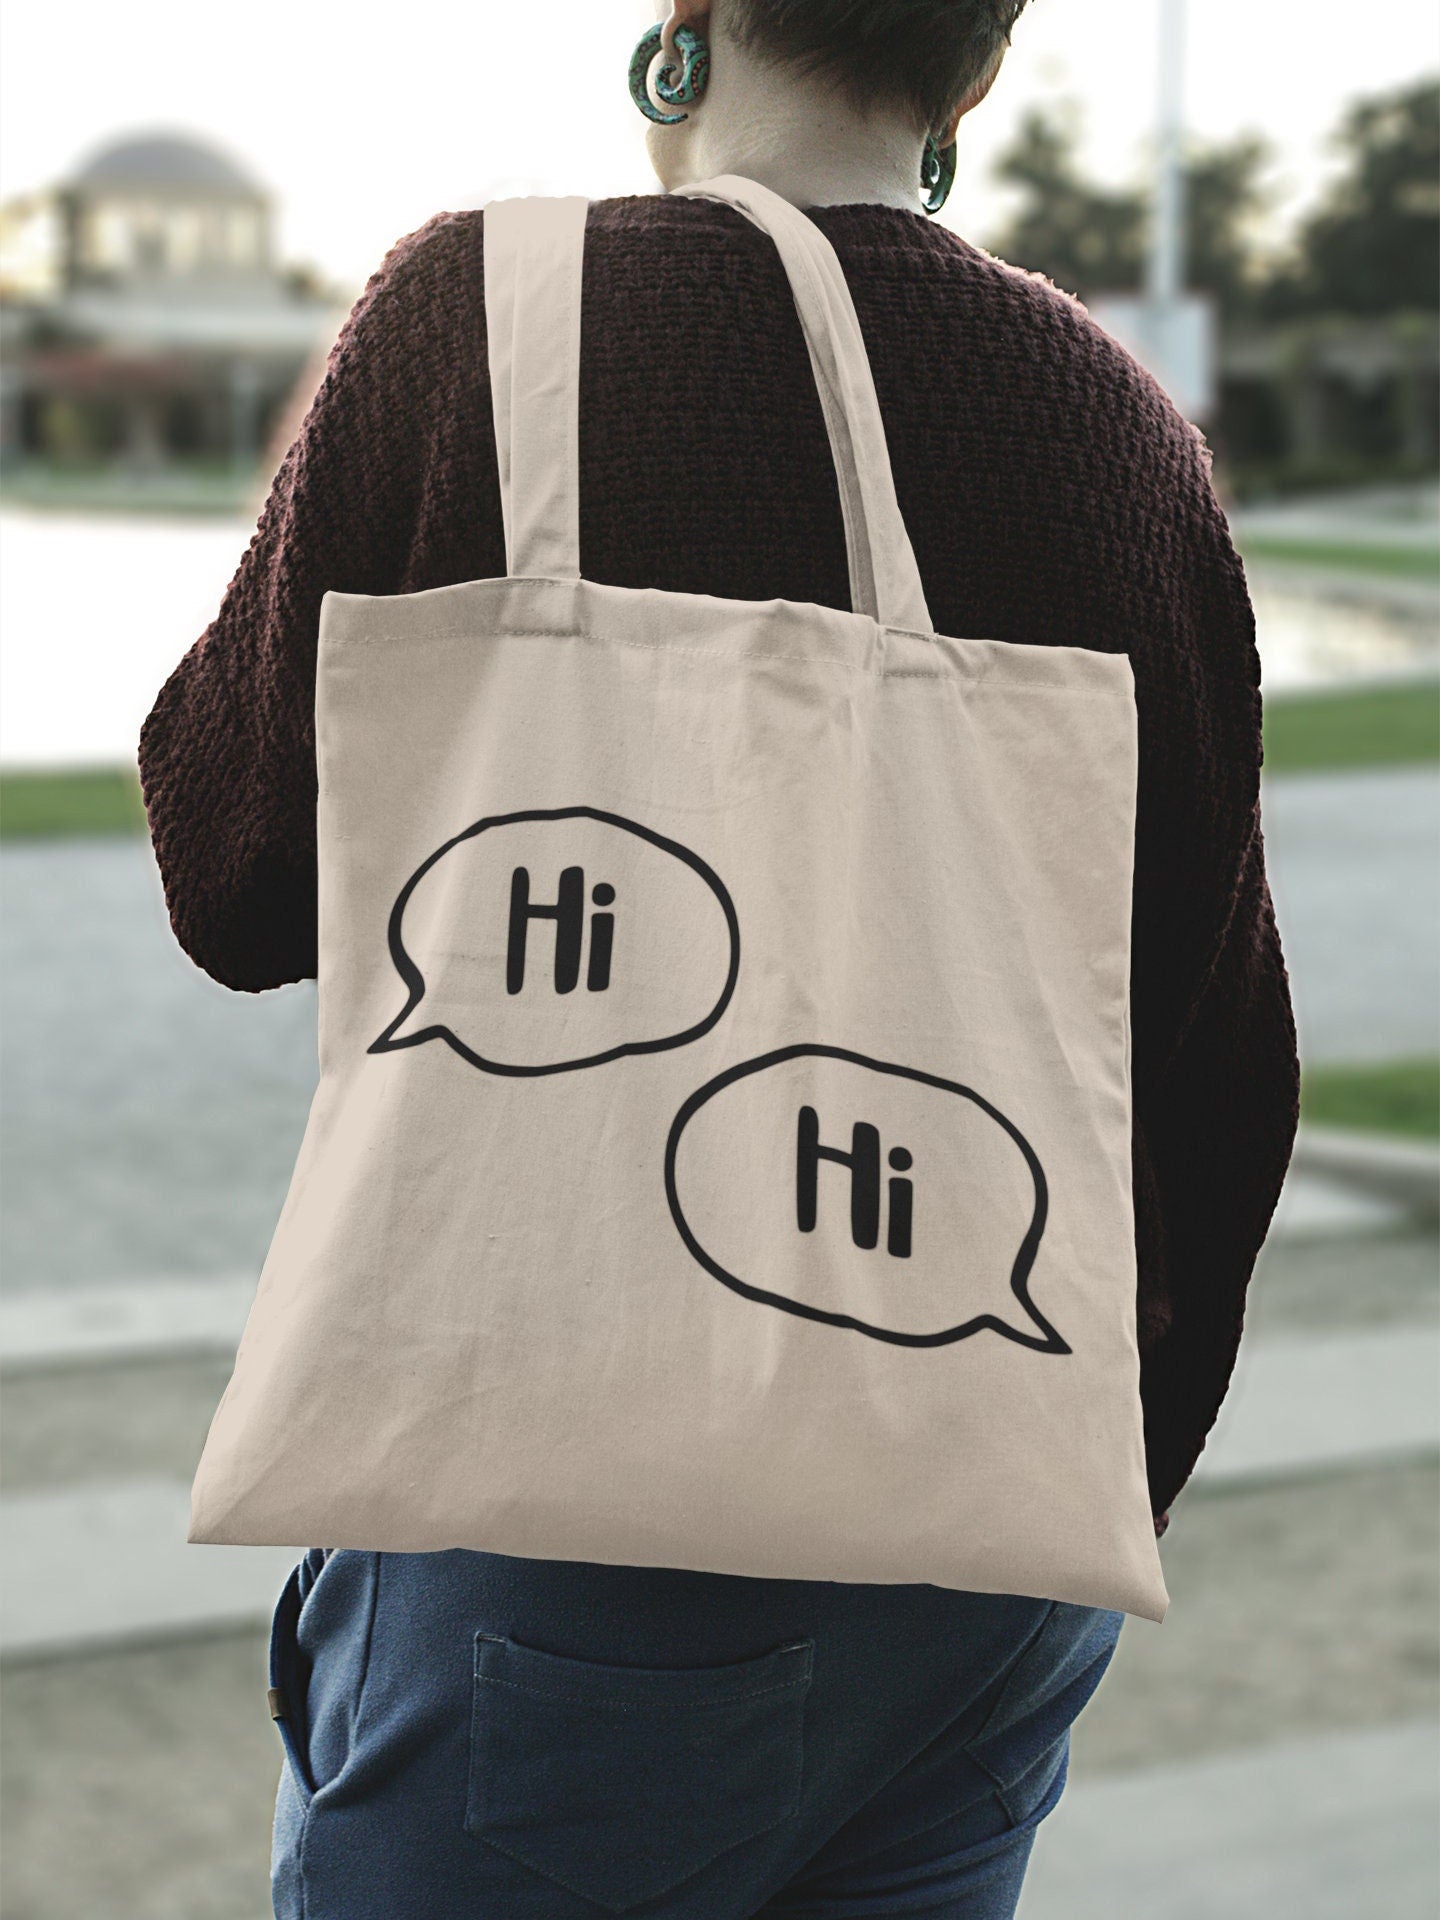 Hi, Hi Inspired Heartstopper Tote Bag | LGBTQ Tote Bags